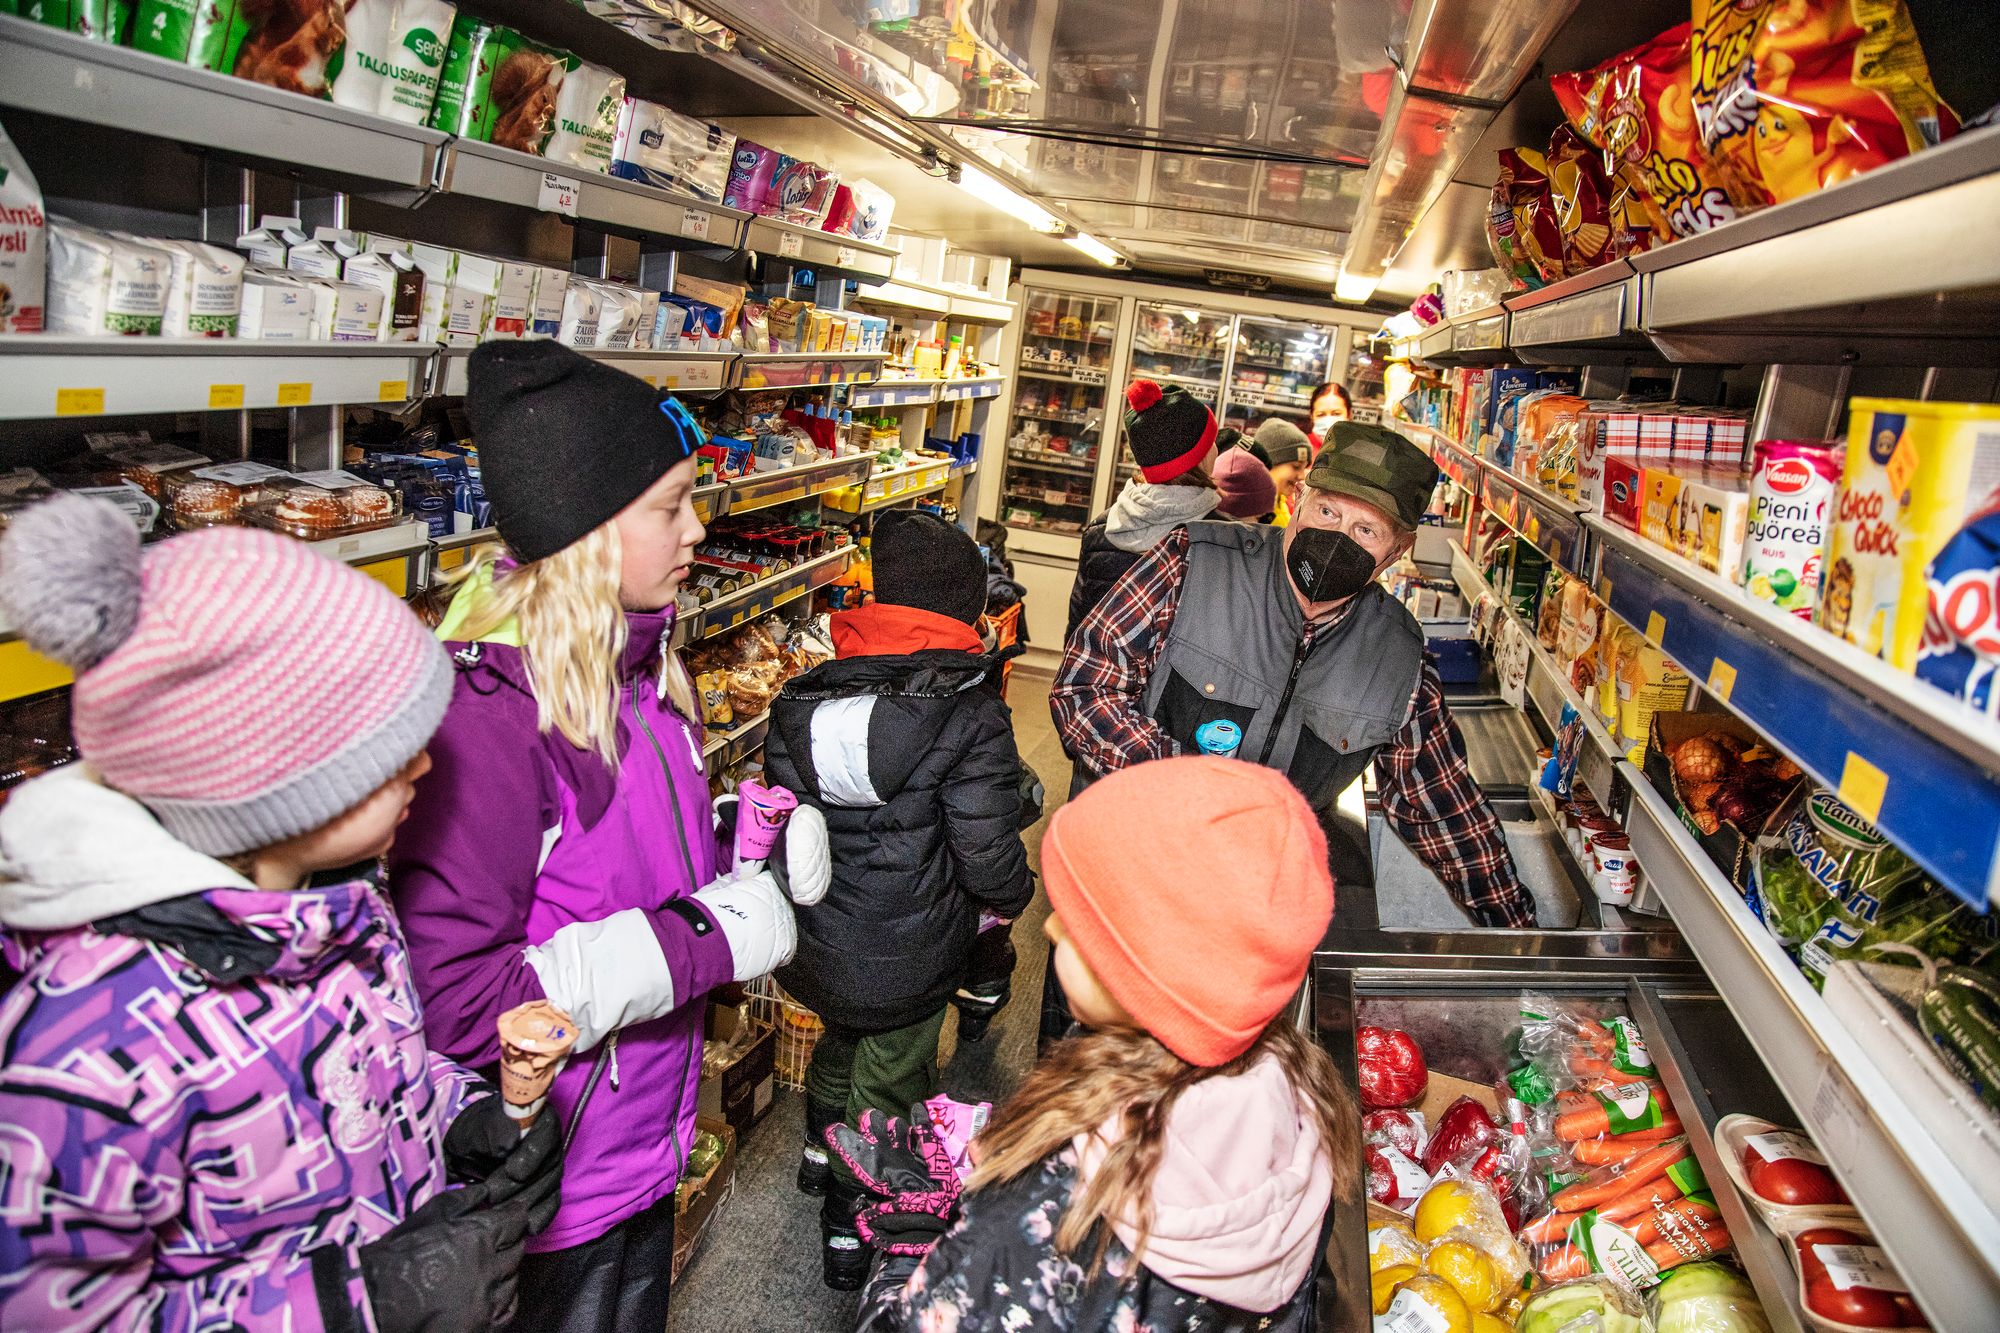 Siikasalmen kristillisen koulun oppilaat tutustuvat kauppa-auton sisältöön. Matti tarjoaa oppilaille jäätelöt. © Harri Mäenpää